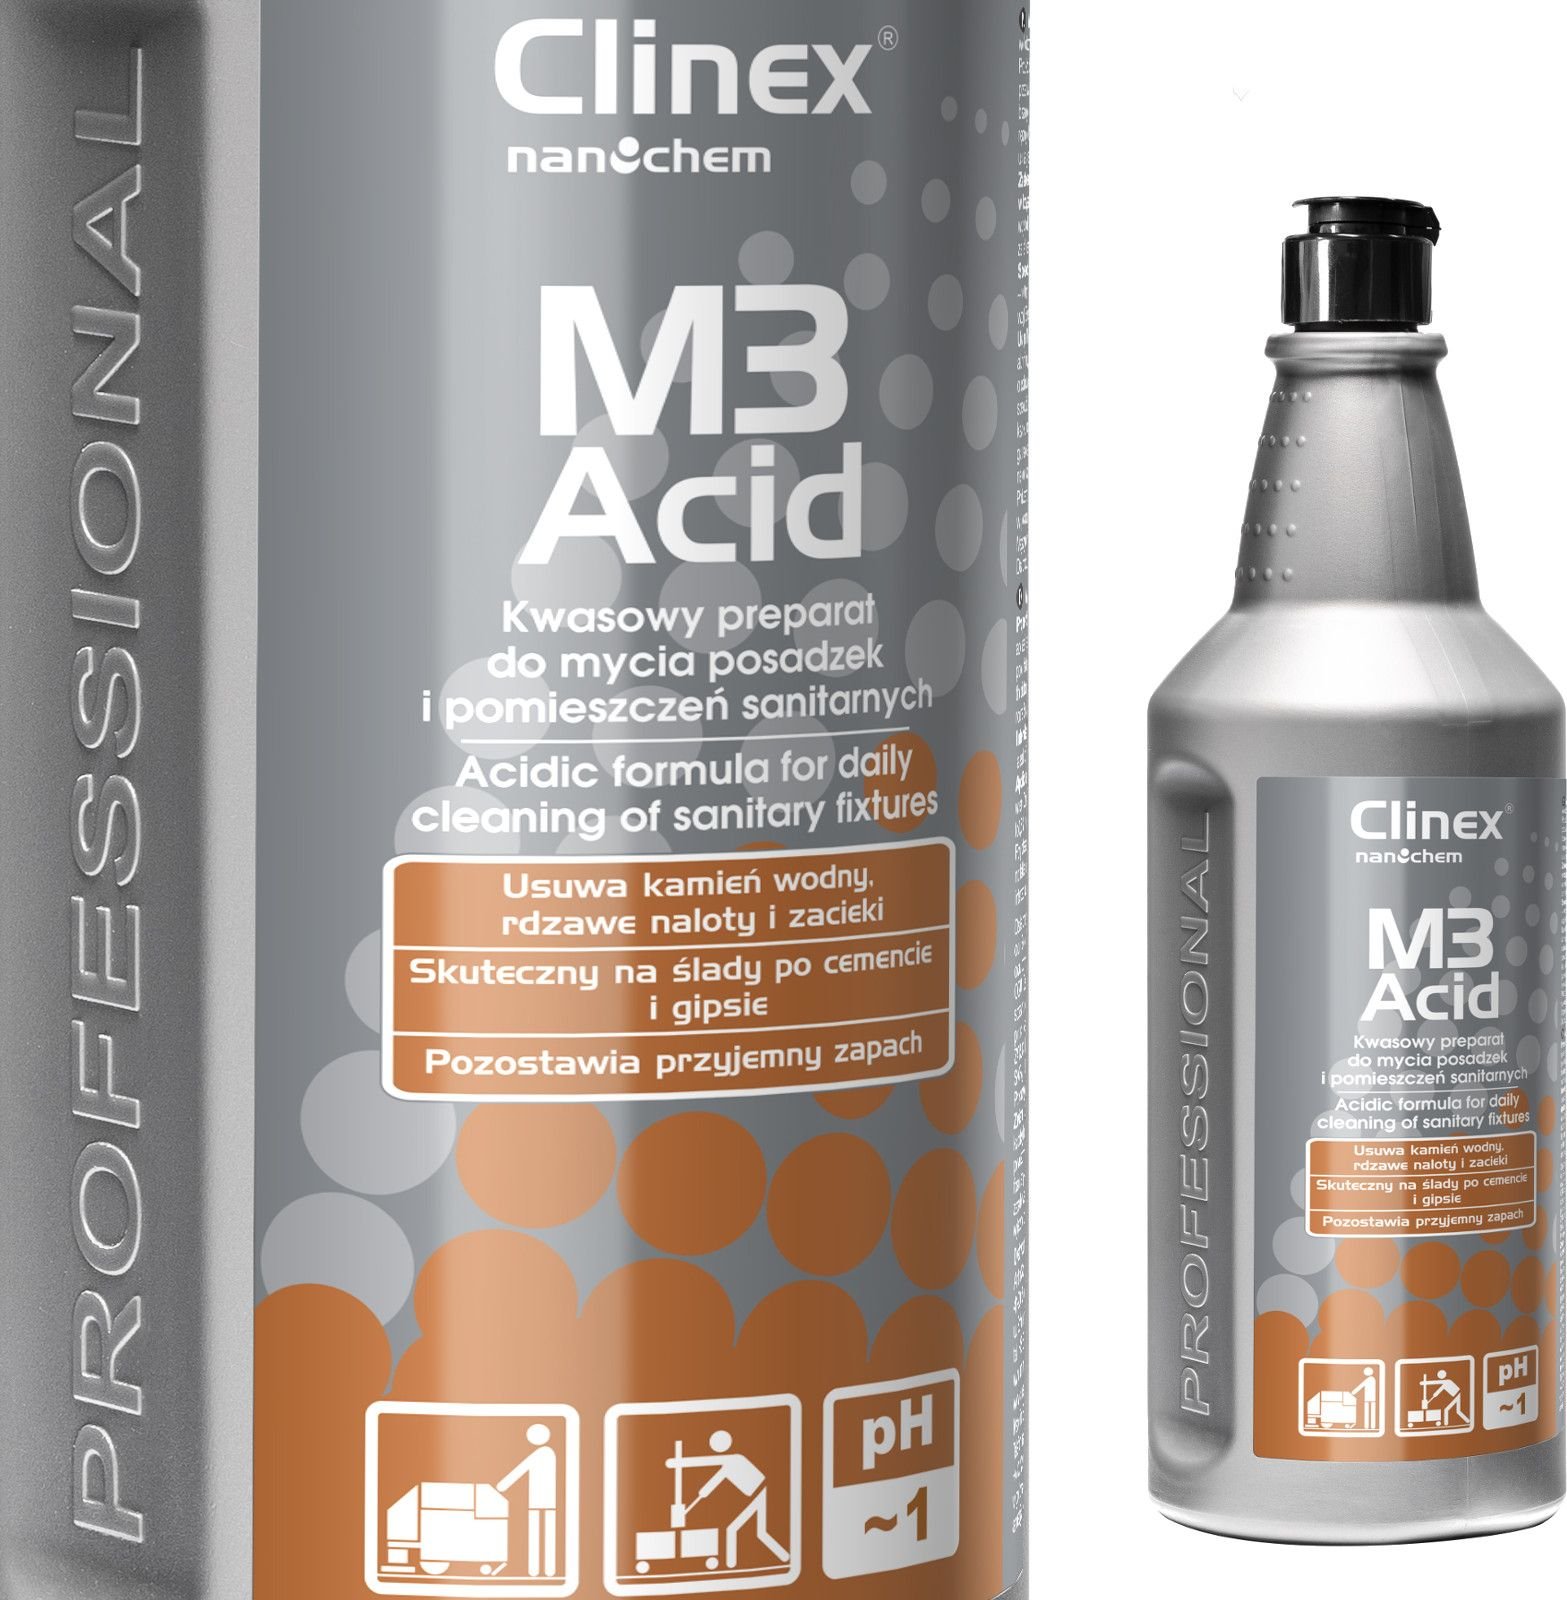 Clinex Concentrat acid pentru curățarea băilor și camerelor sanitare CLINEX M3 Acid 1L Concentrat acid pentru curățarea băilor și camerelor sanitare CLINEX M3 Acid 1L